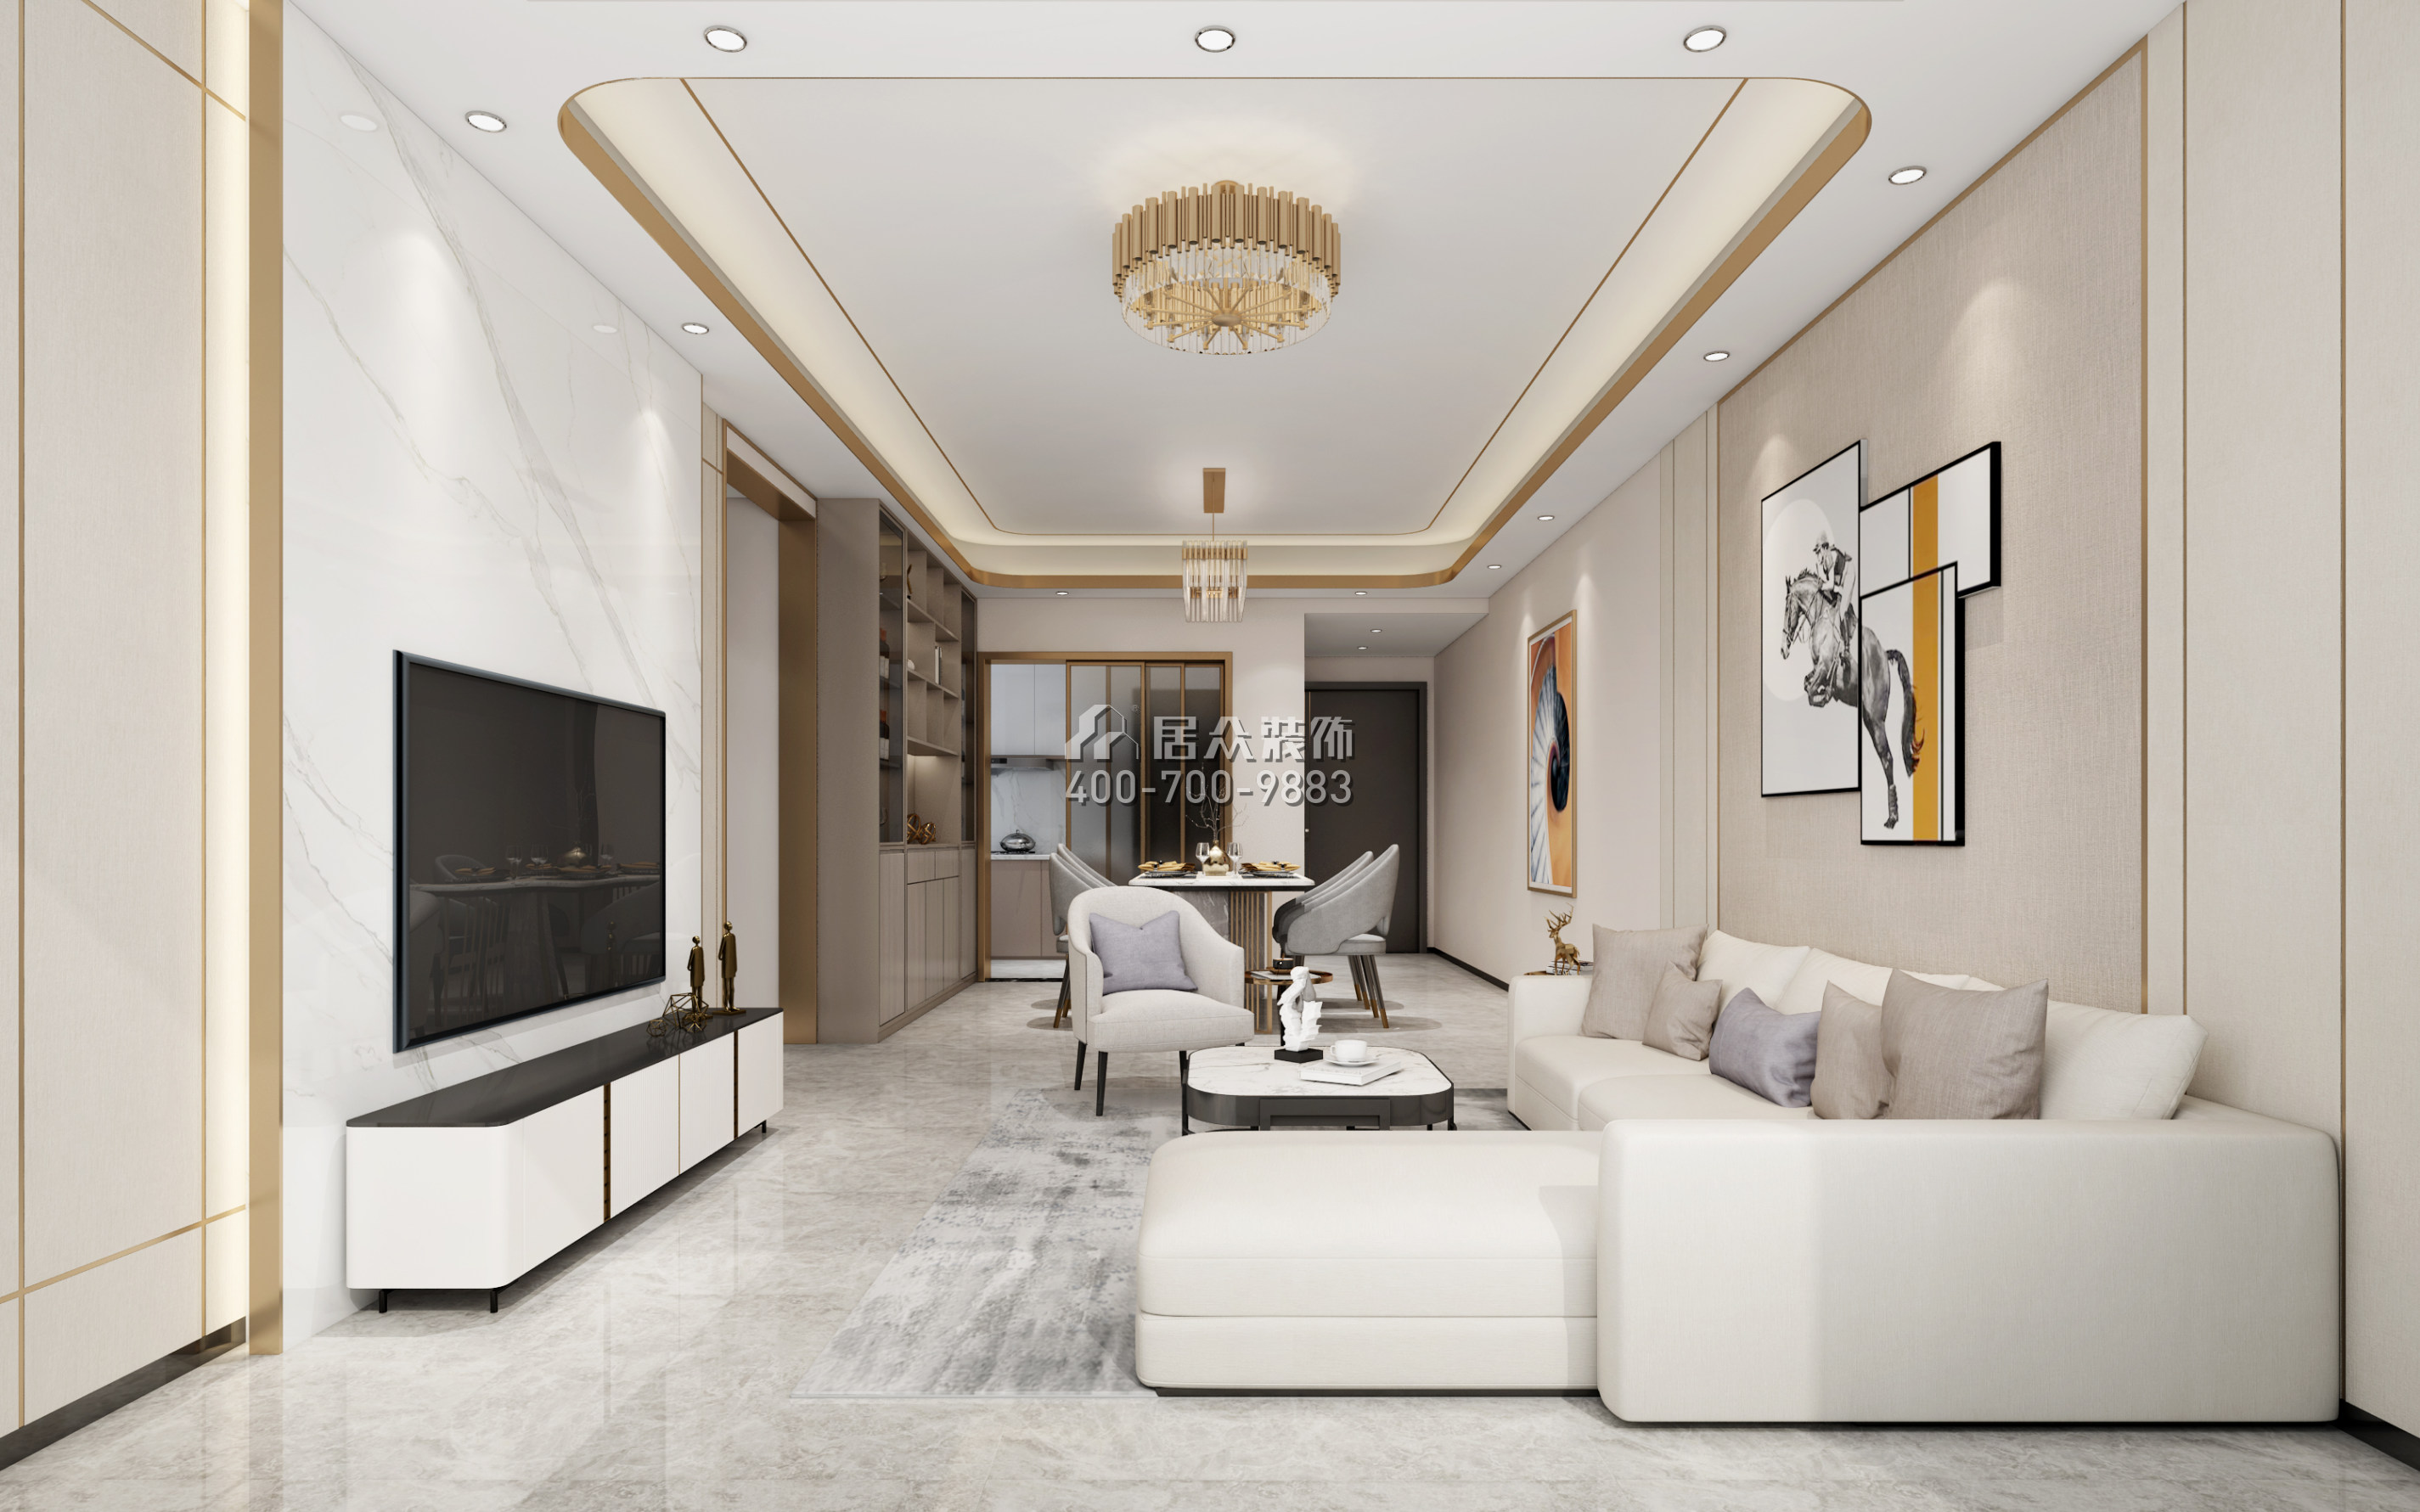 天鹅湖花园二期123平方米现代简约风格平层户型客厅装修效果图